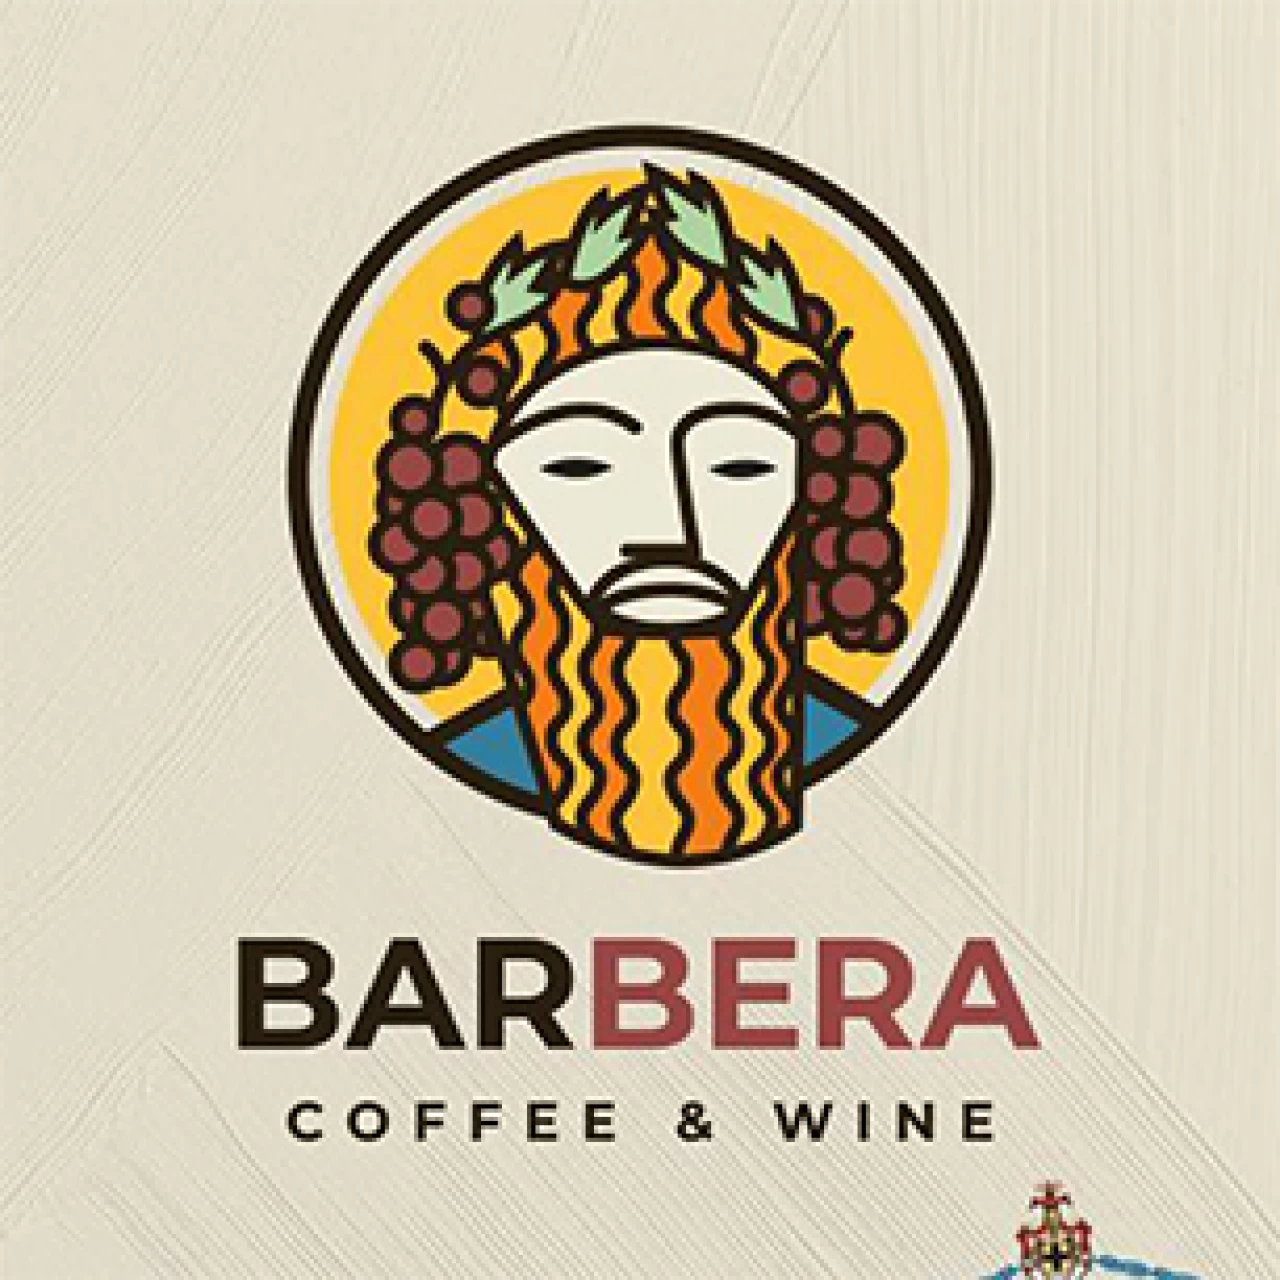 Banner Barbera Isernia 306 per 306 pixel